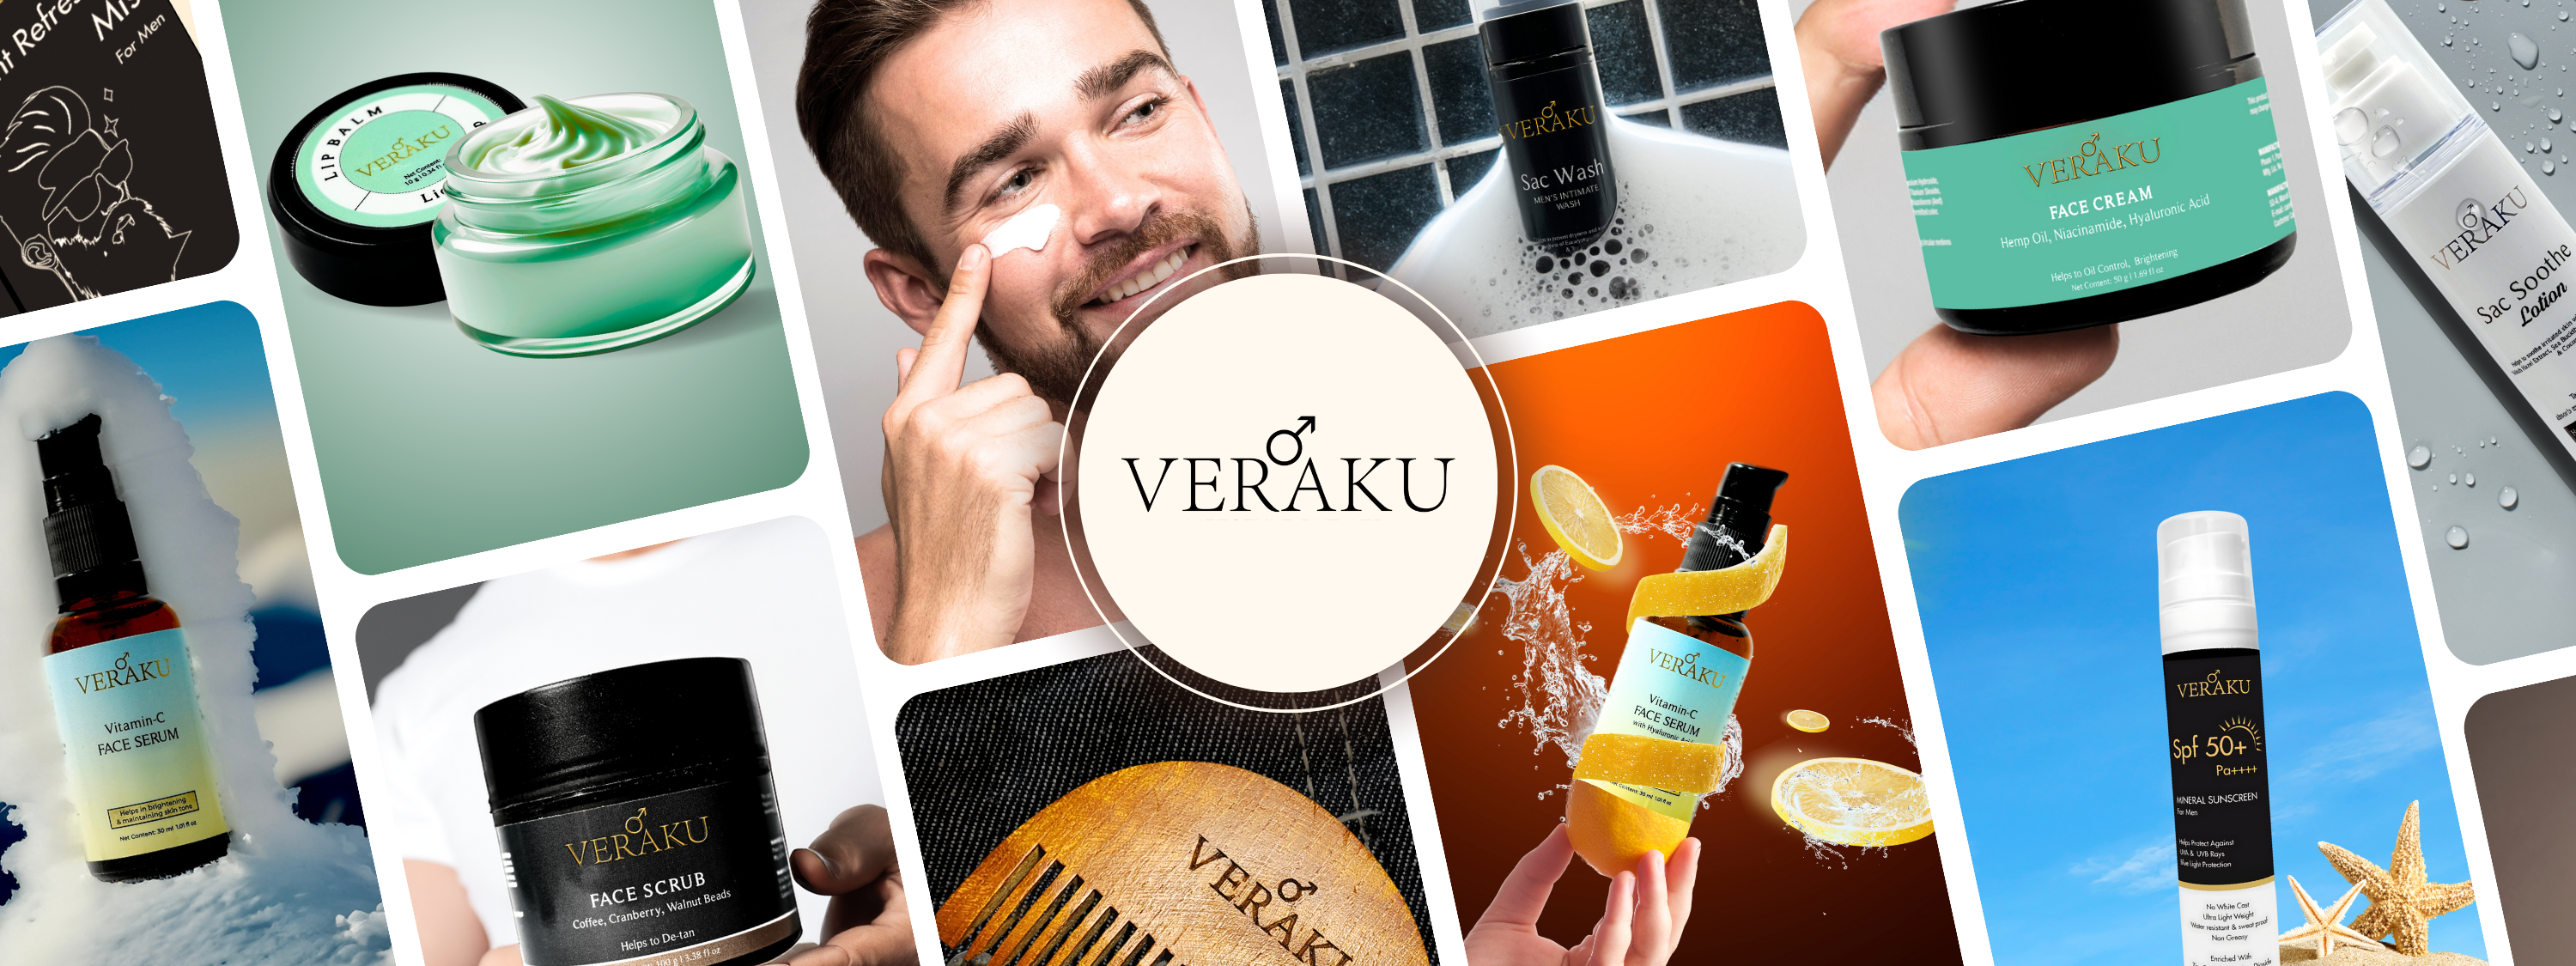 Veraku Brand Image